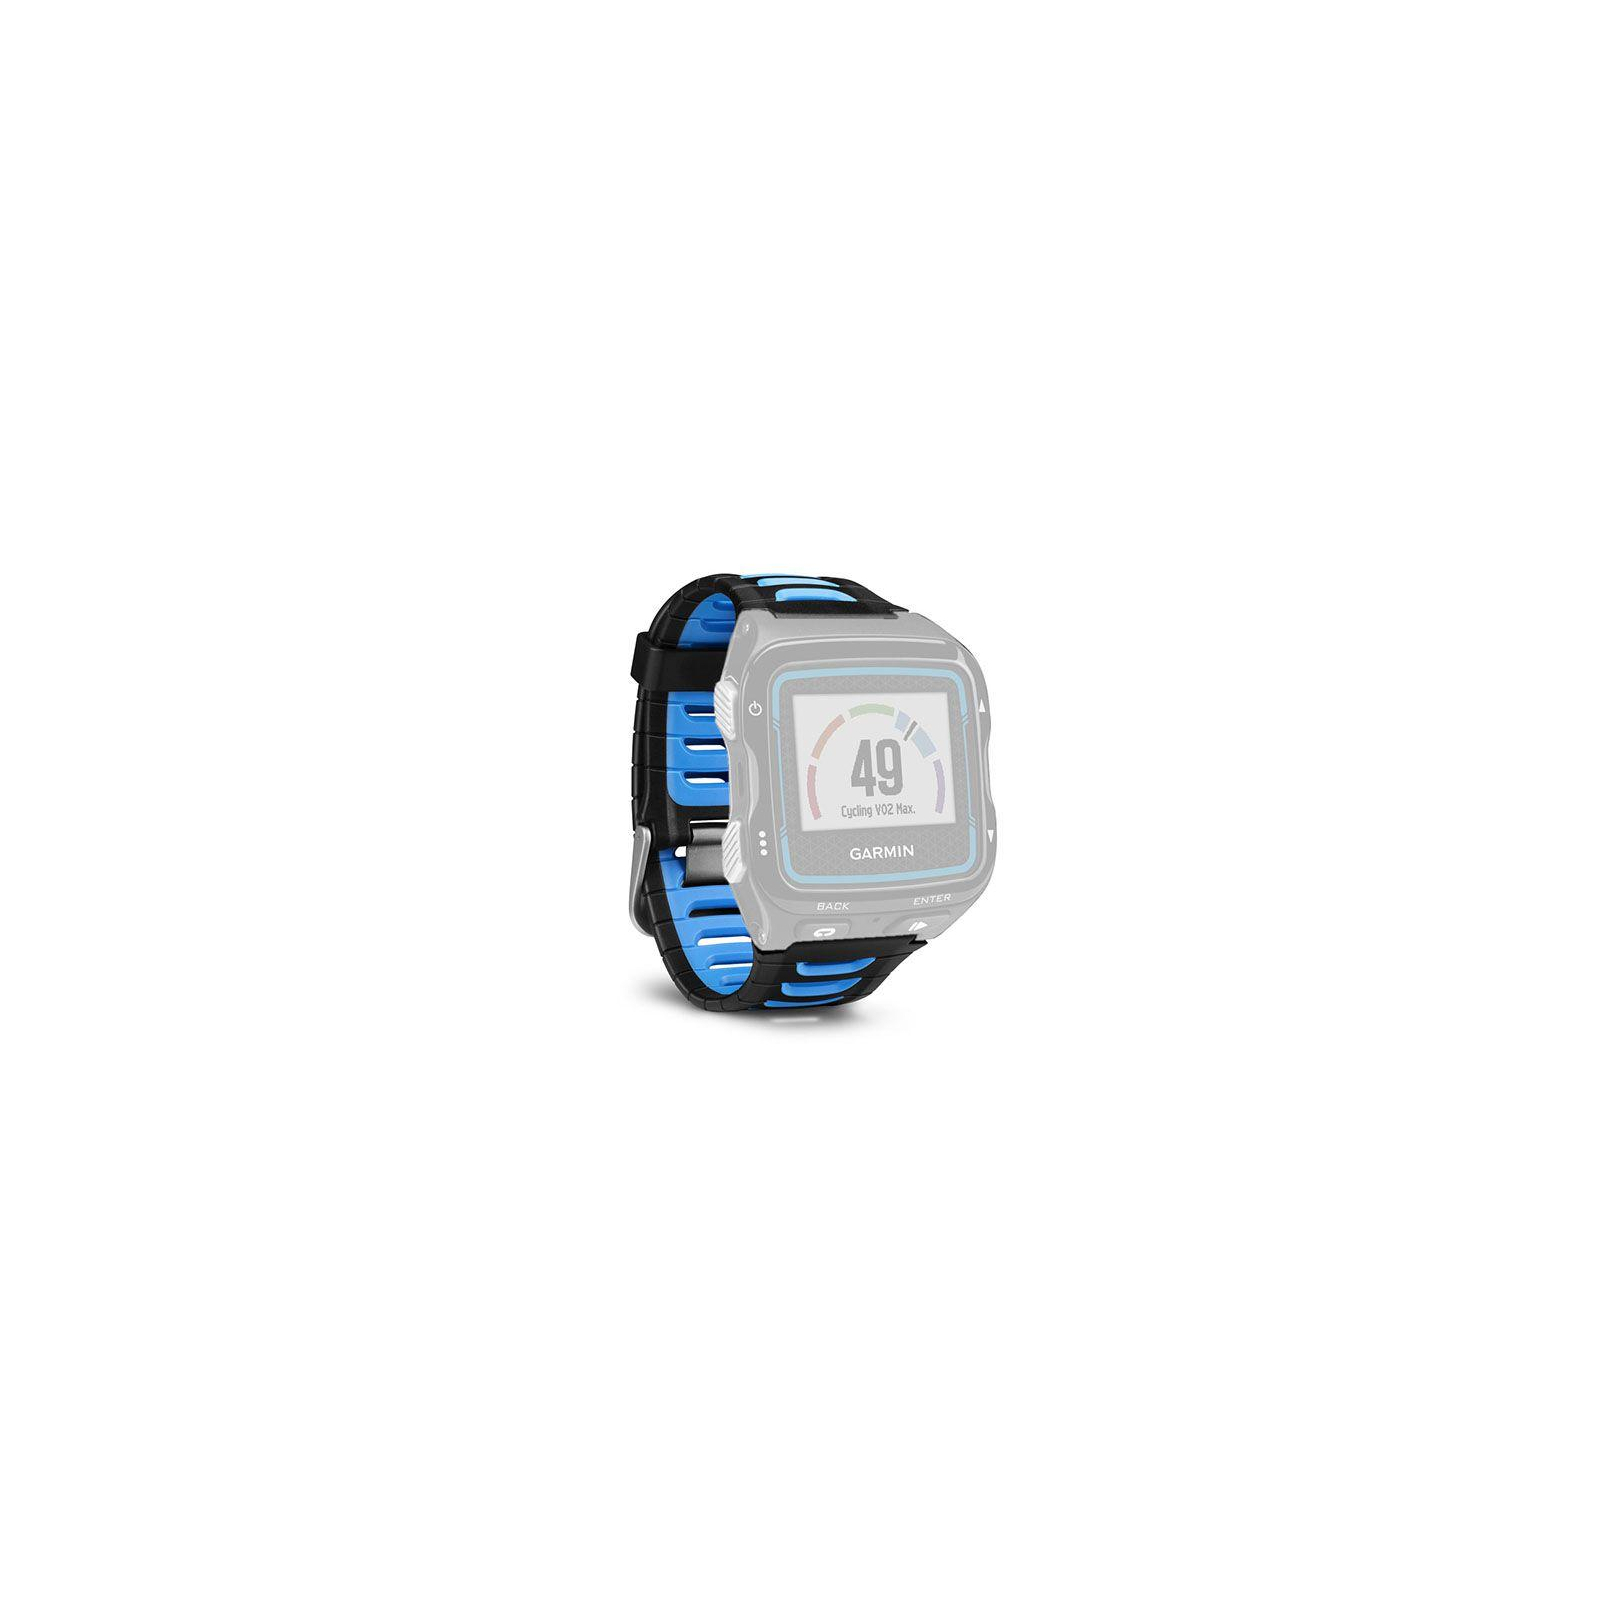 Ремешок для смарт-часов Garmin Replacement Band, Forerunner 920XT, Blk/Blue (010-11251-41) изображение 3